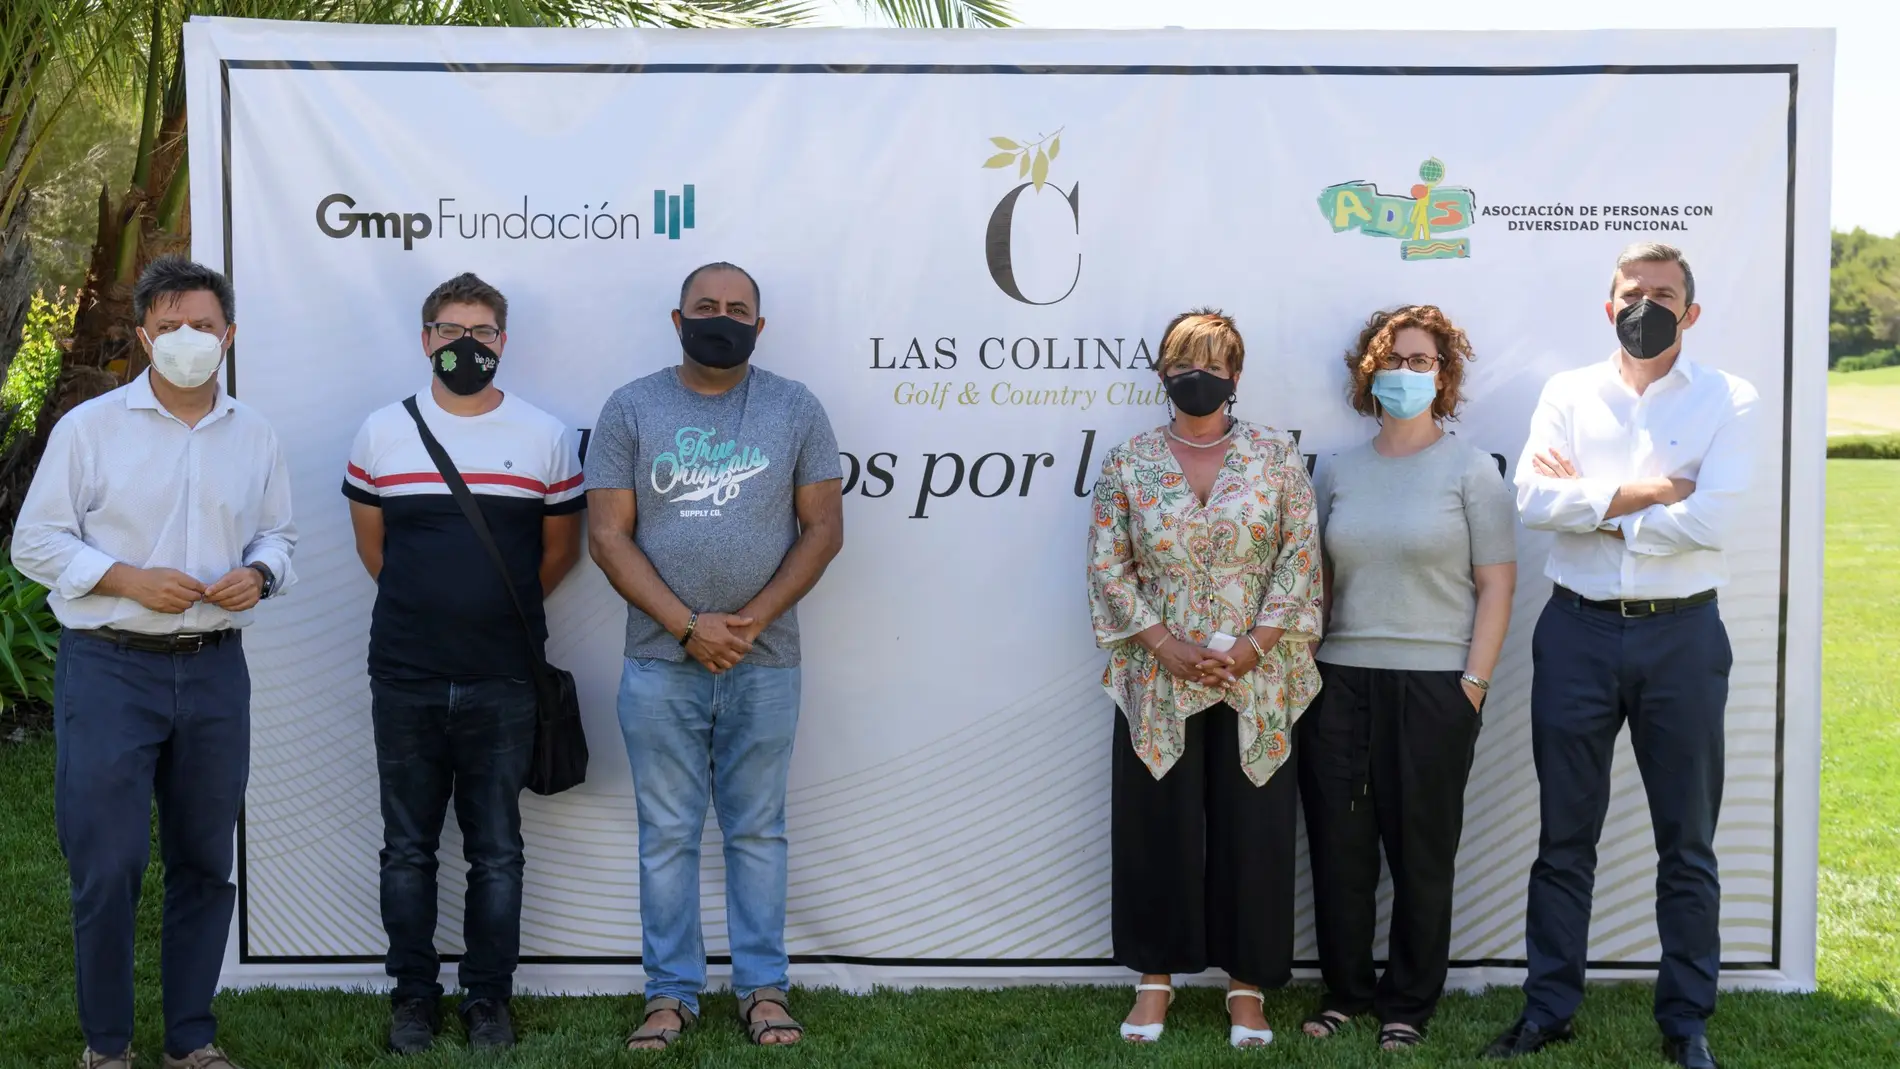 El proyecto “Alimentos por la Inclusión” de Las Colinas Golf & Country Club y Fundación Gmp apoyará a 26 familias de la Vega Baja en situación de vulnerabilidad 